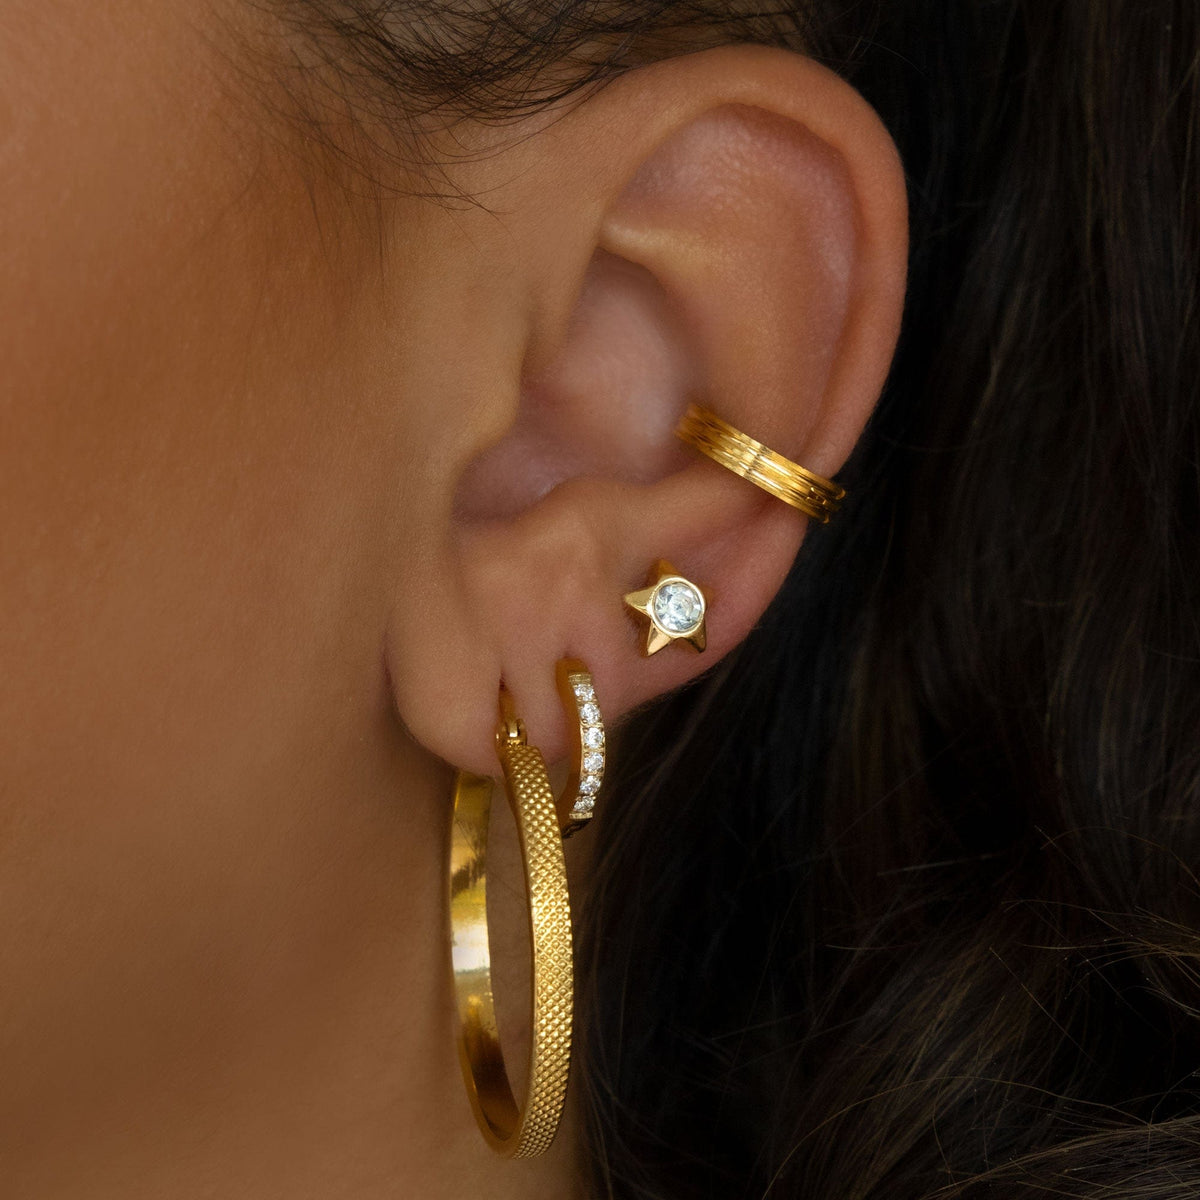 BohoMoon Stainless Steel Kingston Hoop Earrings Gold